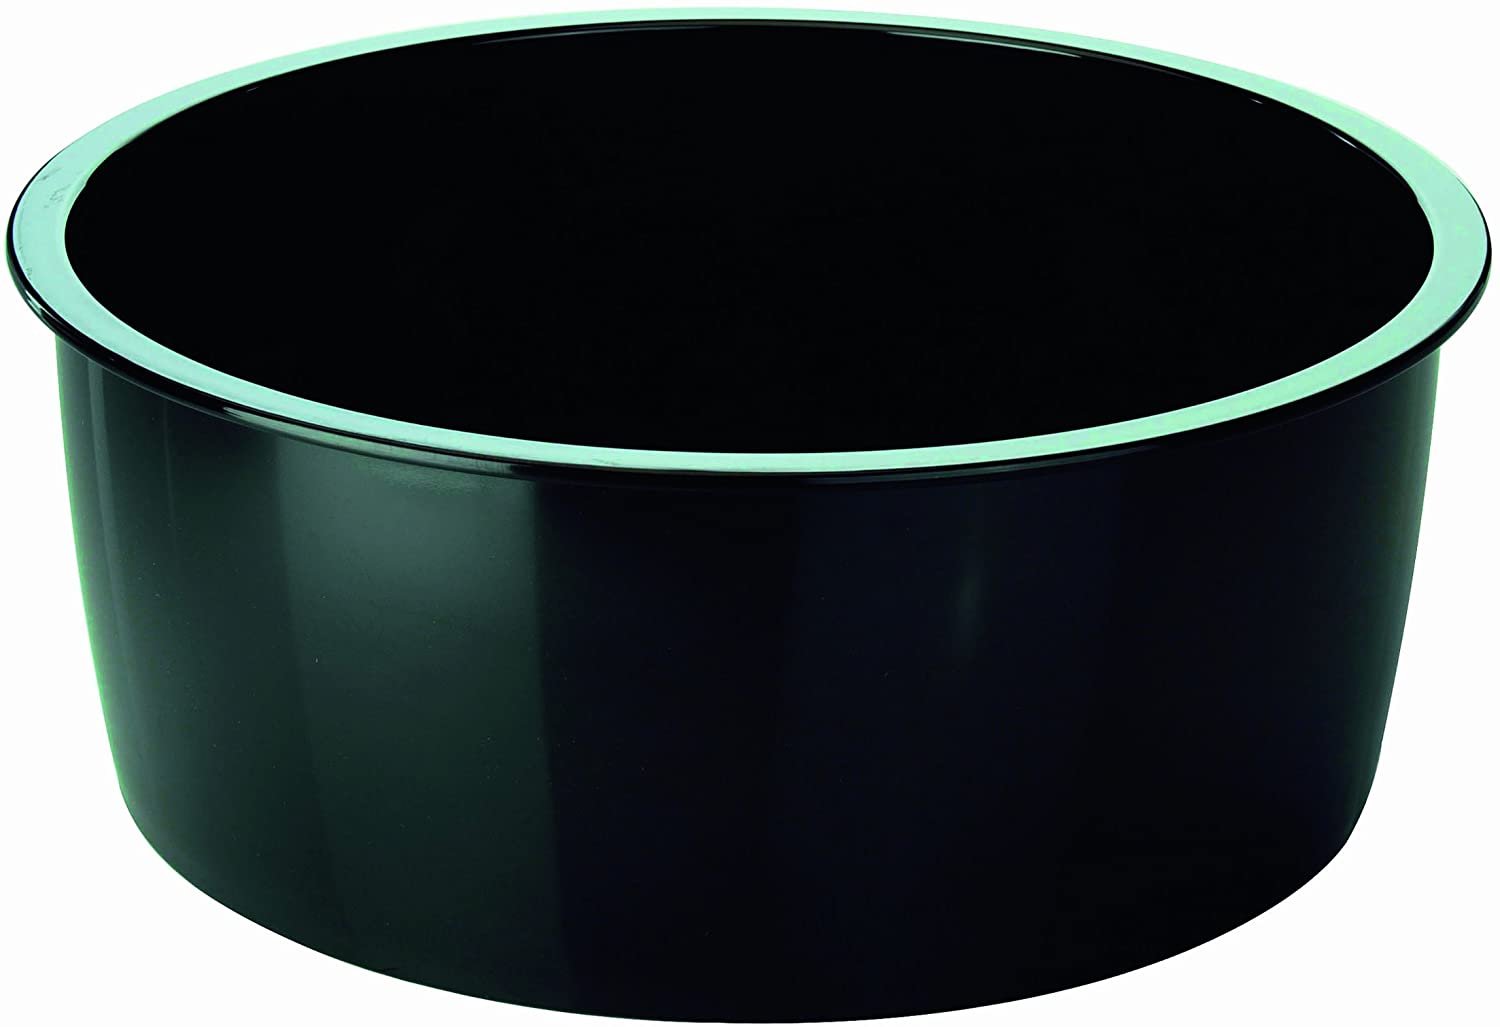 Kuhn Rikon Hotpan Bowl, 26cm, 4.5L, Black